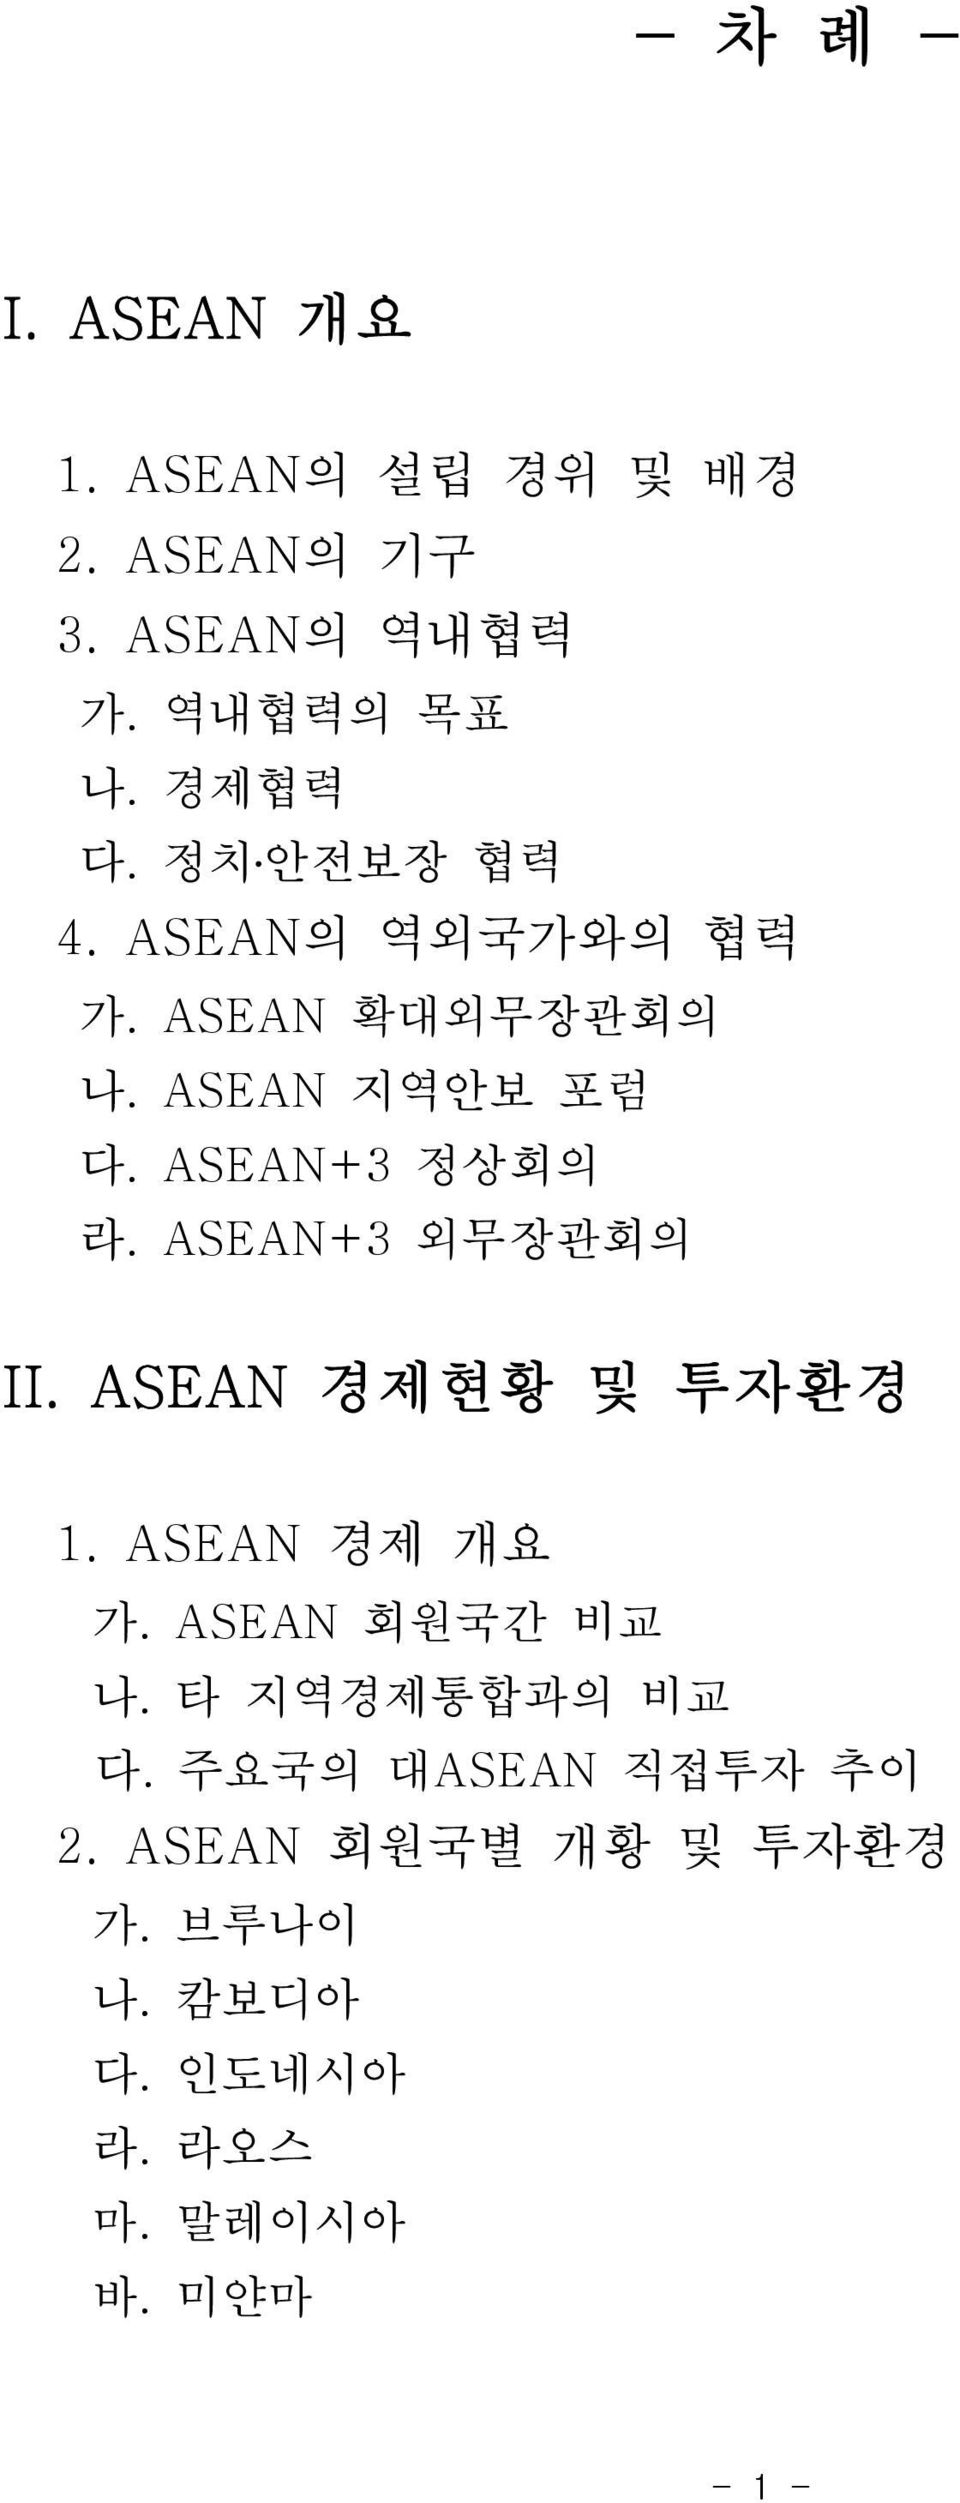 ASEAN+3 II. ASEAN 1. ASEAN. ASEAN.. ASEAN 2.